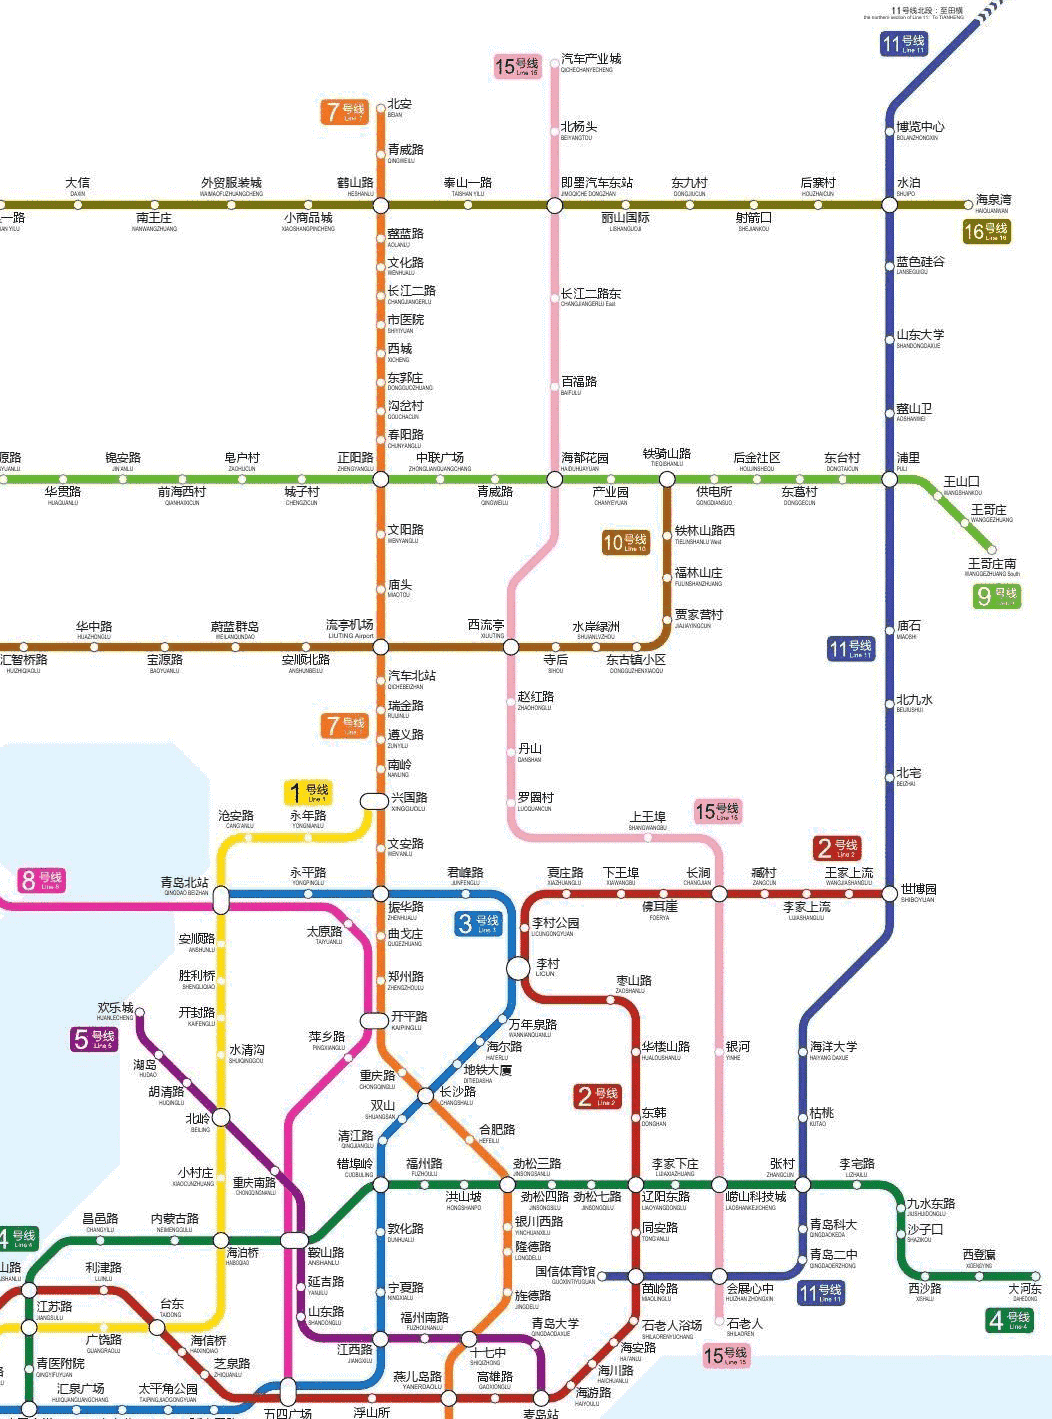 大青岛的中心:这个7条地铁穿过的区市要火